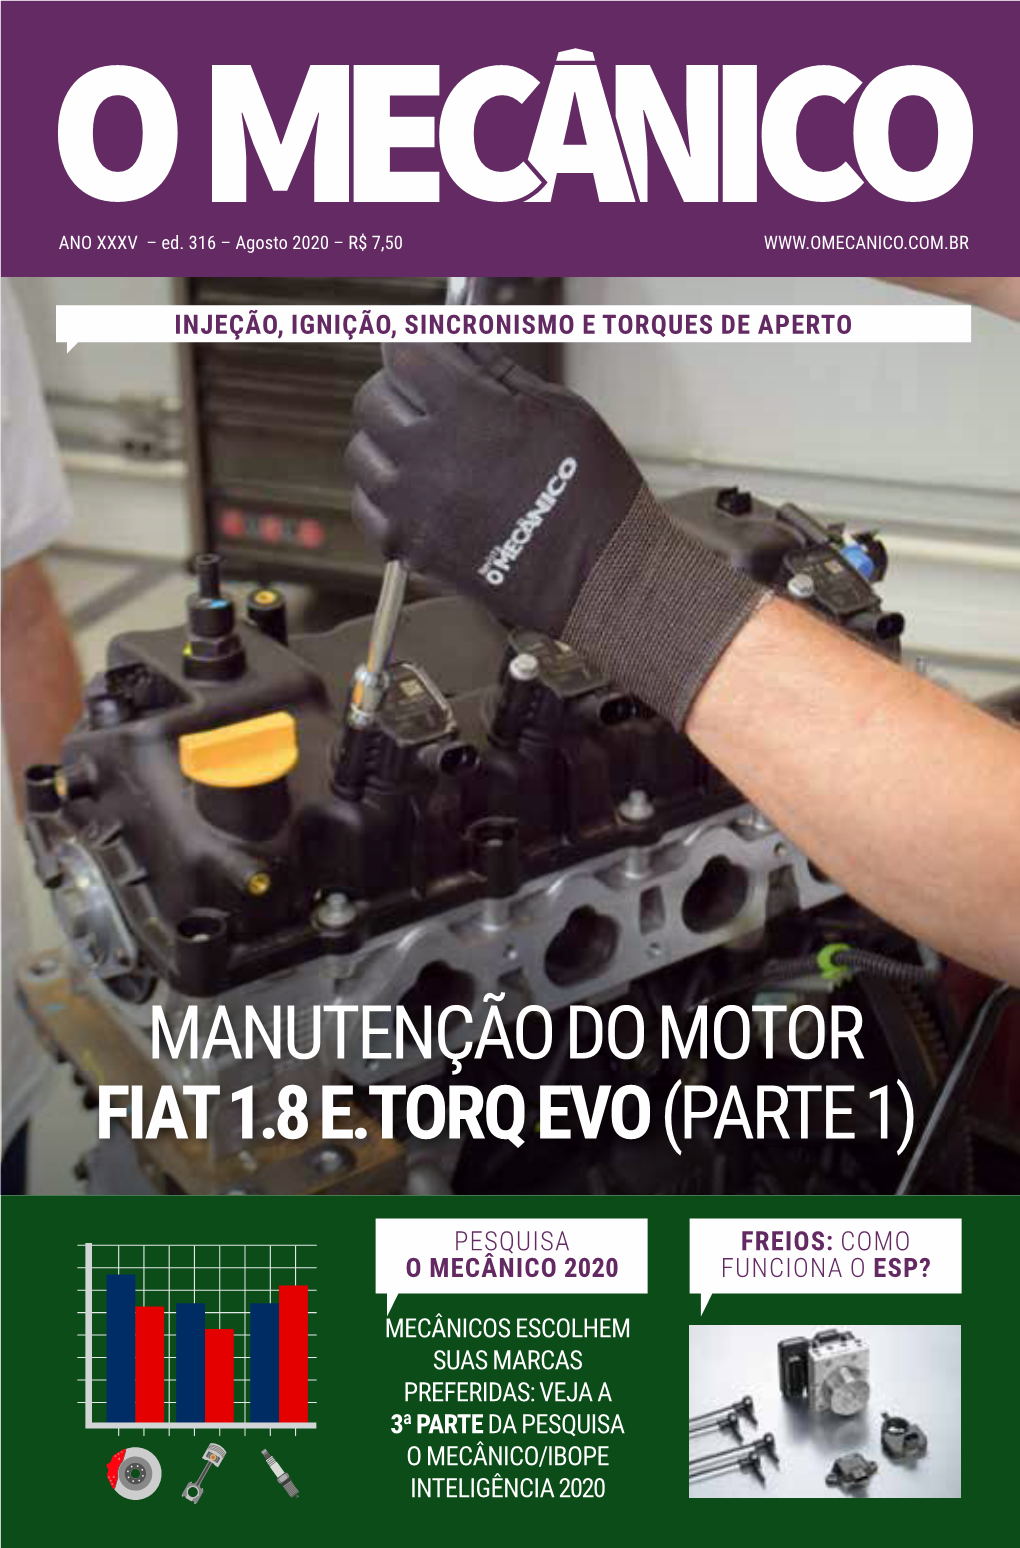 Manutenção Do Motor Fiat 1.8 E.Torq Evo (Parte 1)